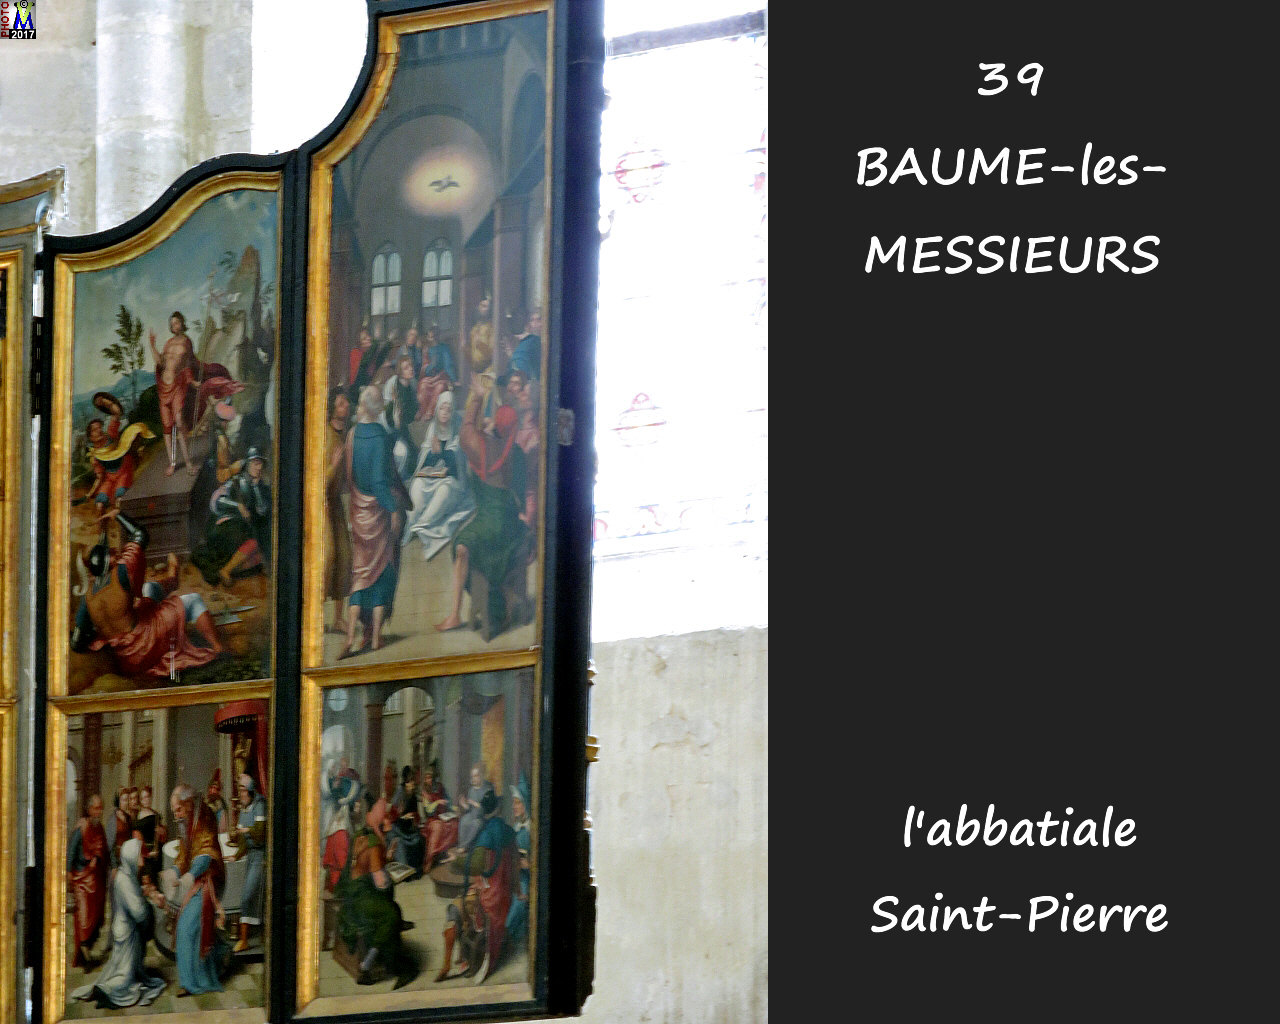 39BAUME-LES-MESSIEURS_abbatiale_234.jpg